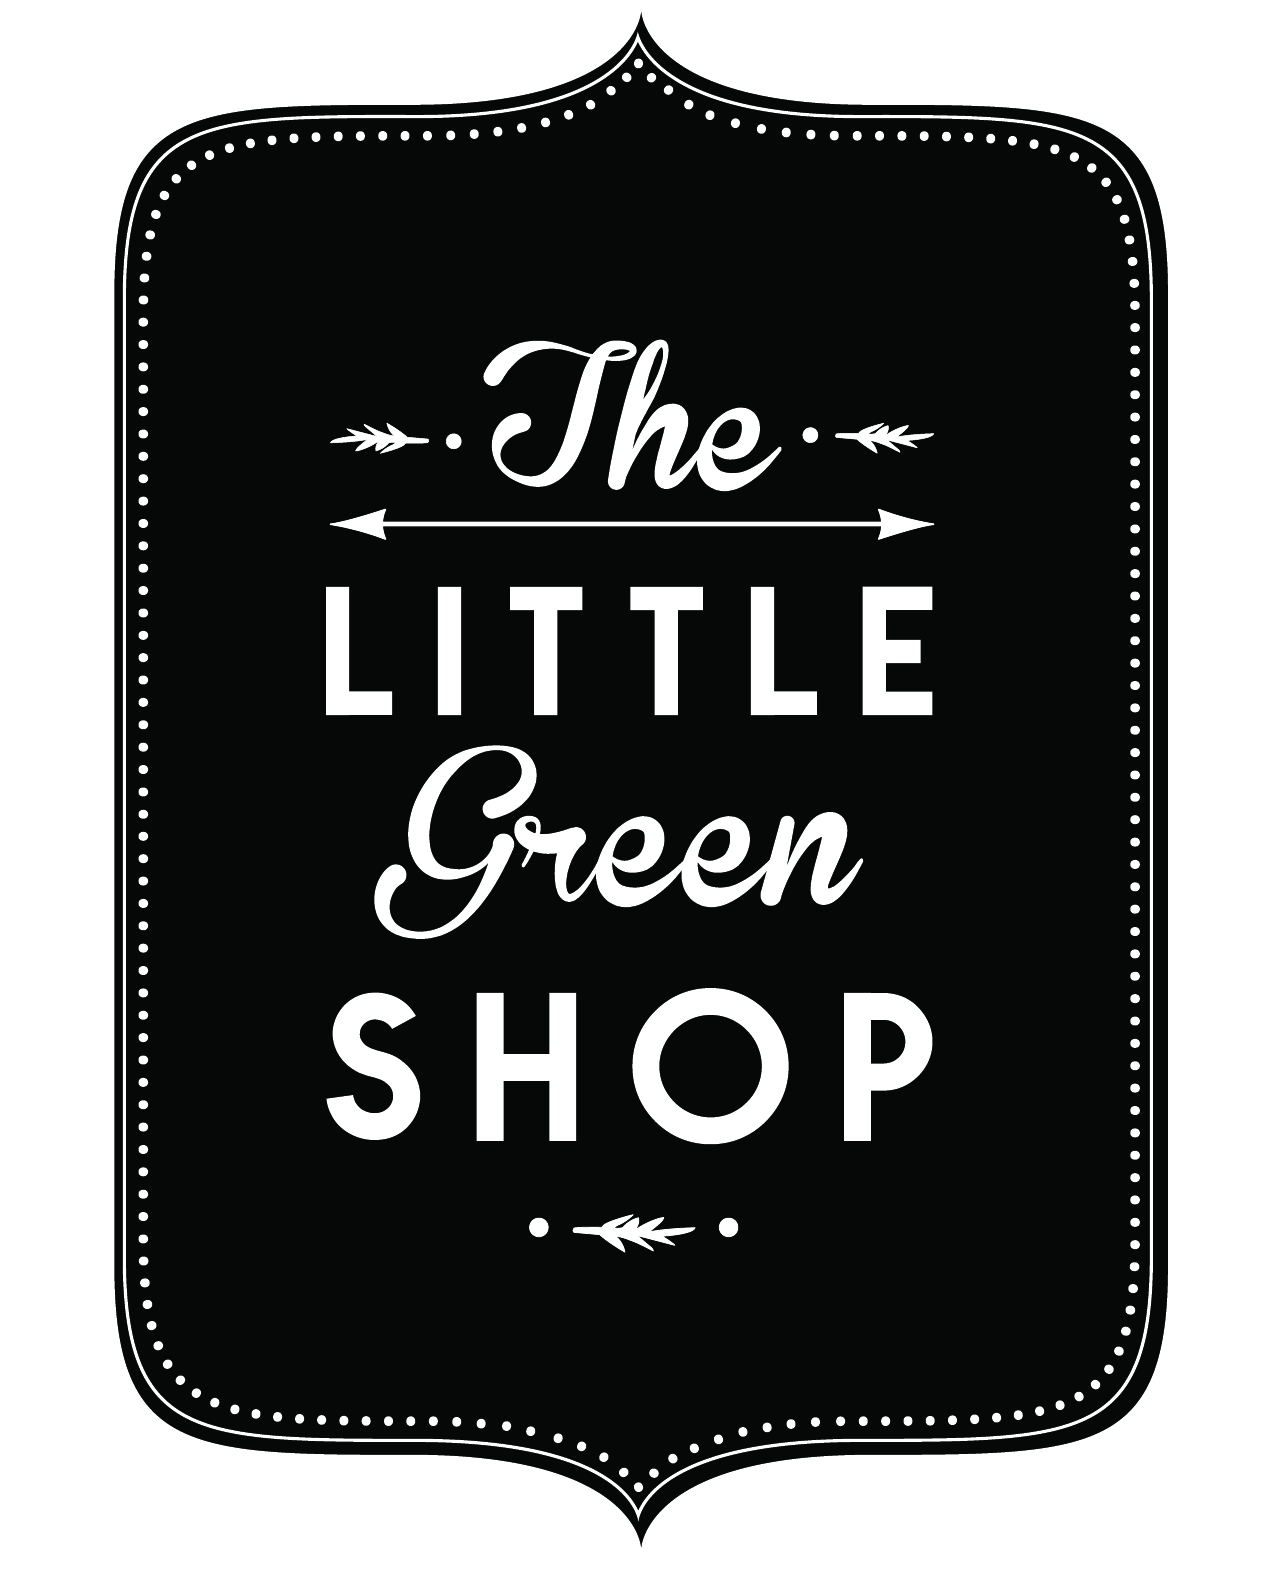 Little Green Shop